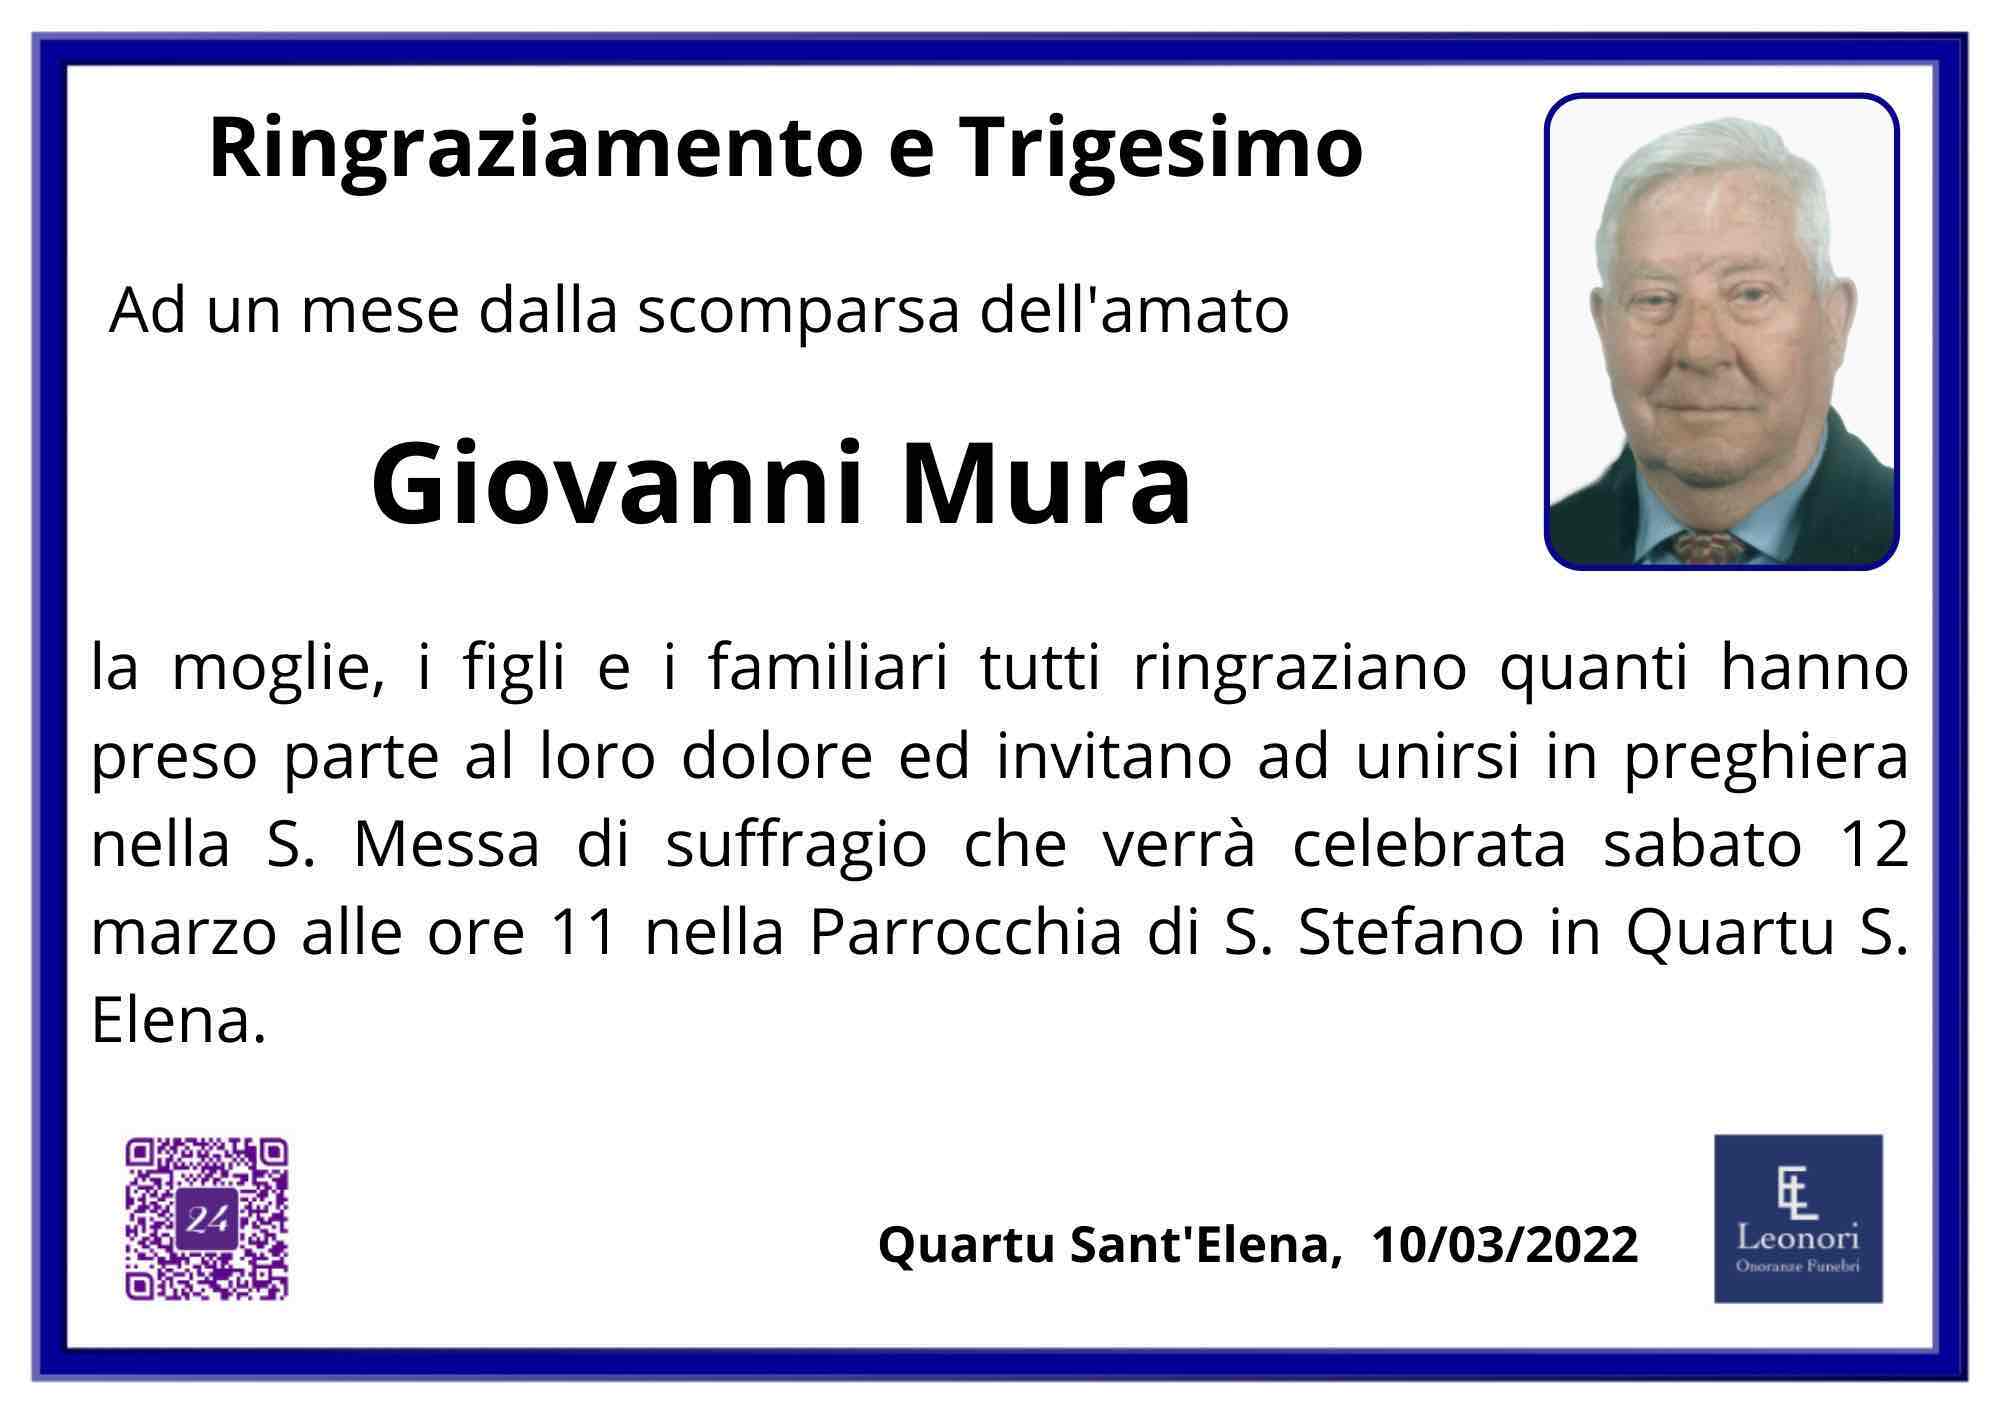 Giovanni Mura